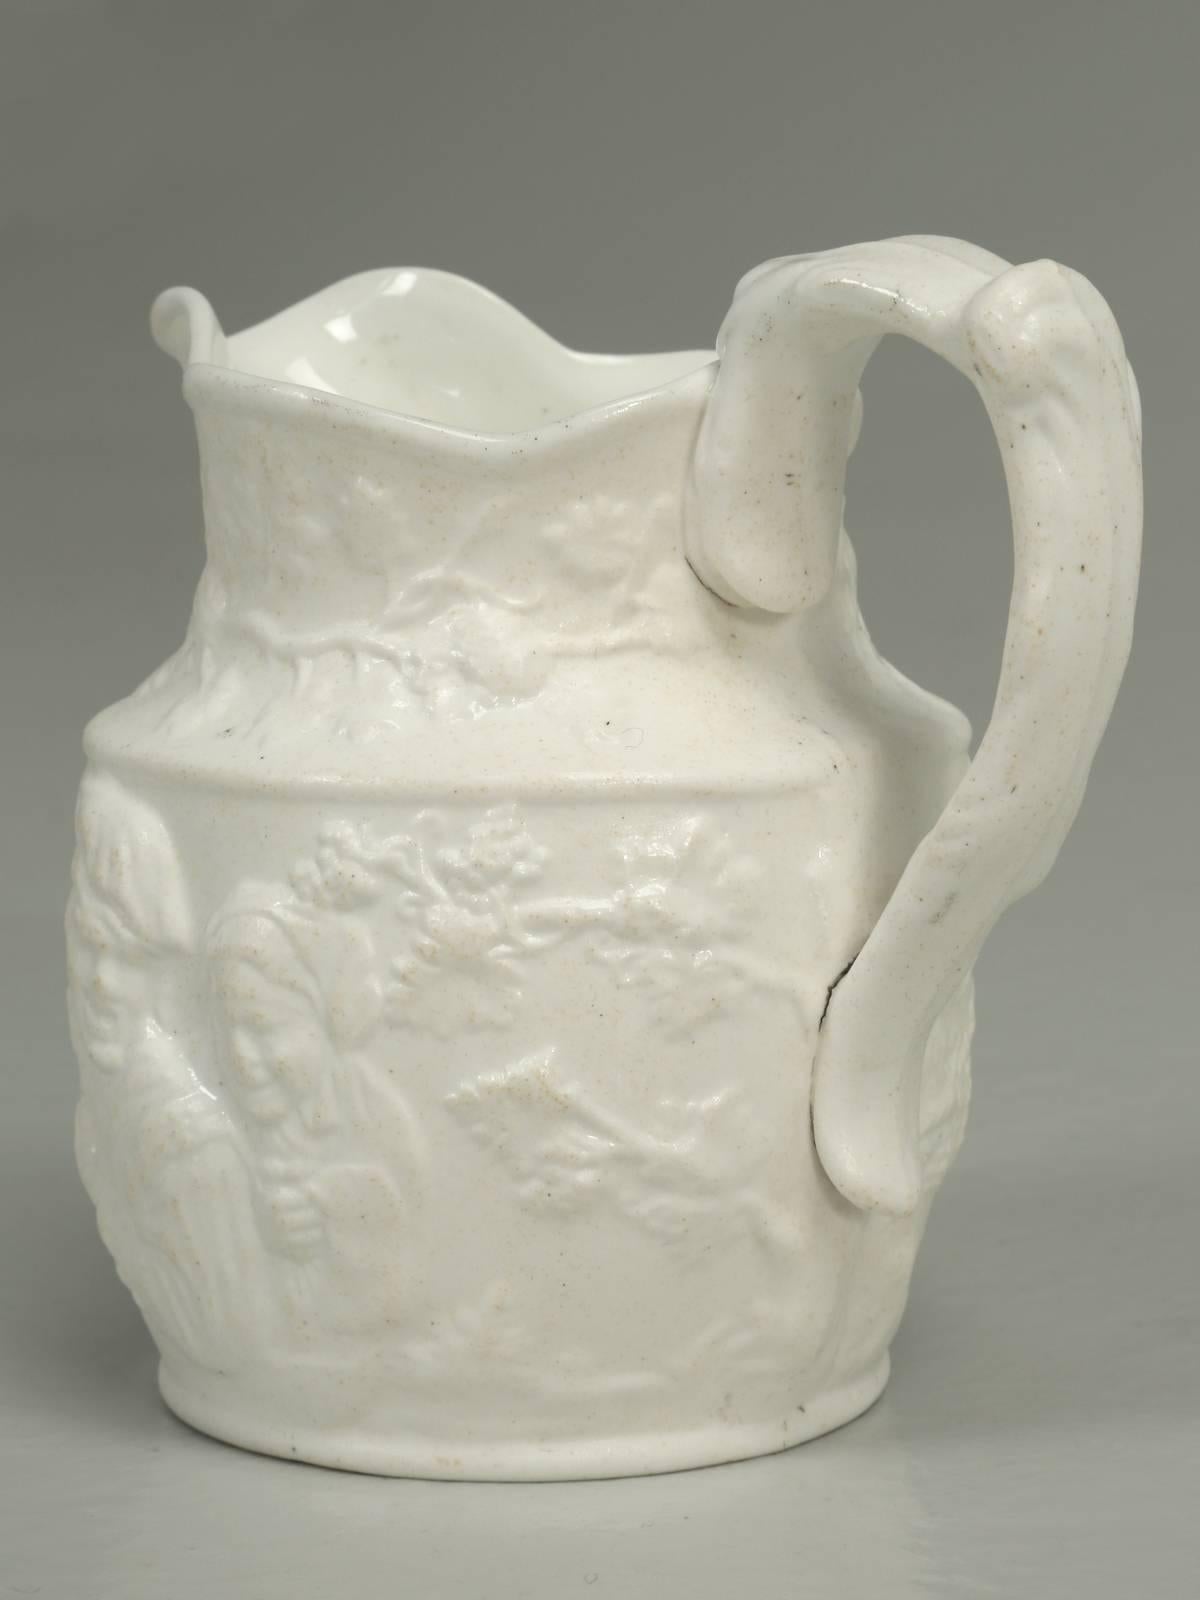 Antique English Porcelain Jug or Pitcher 4